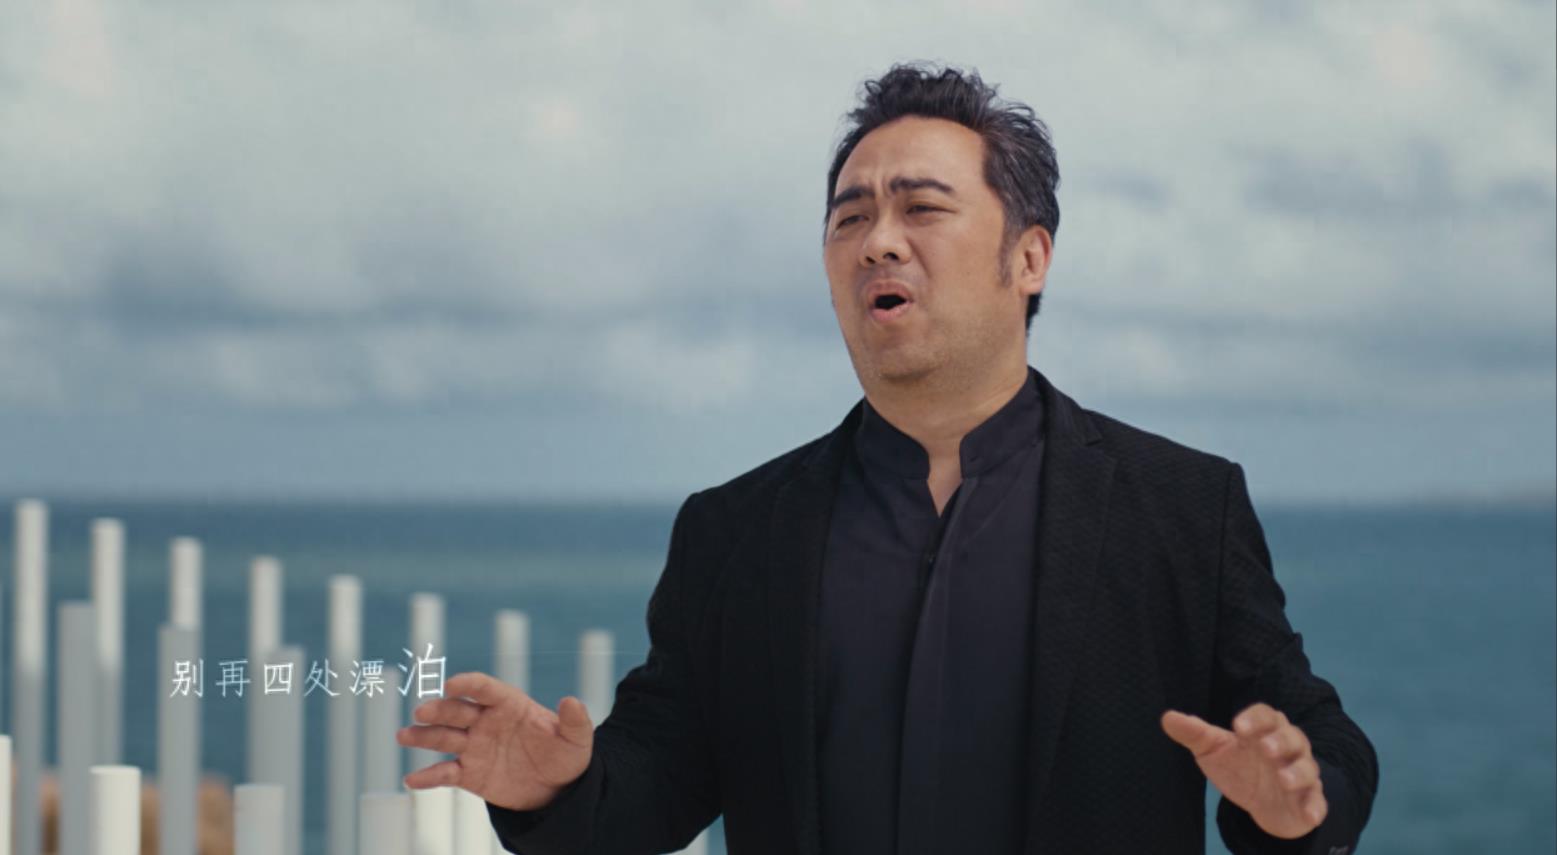 海峡两岸艺术家联袂演绎新版《故乡的云》，MV在平潭猴研岛取景